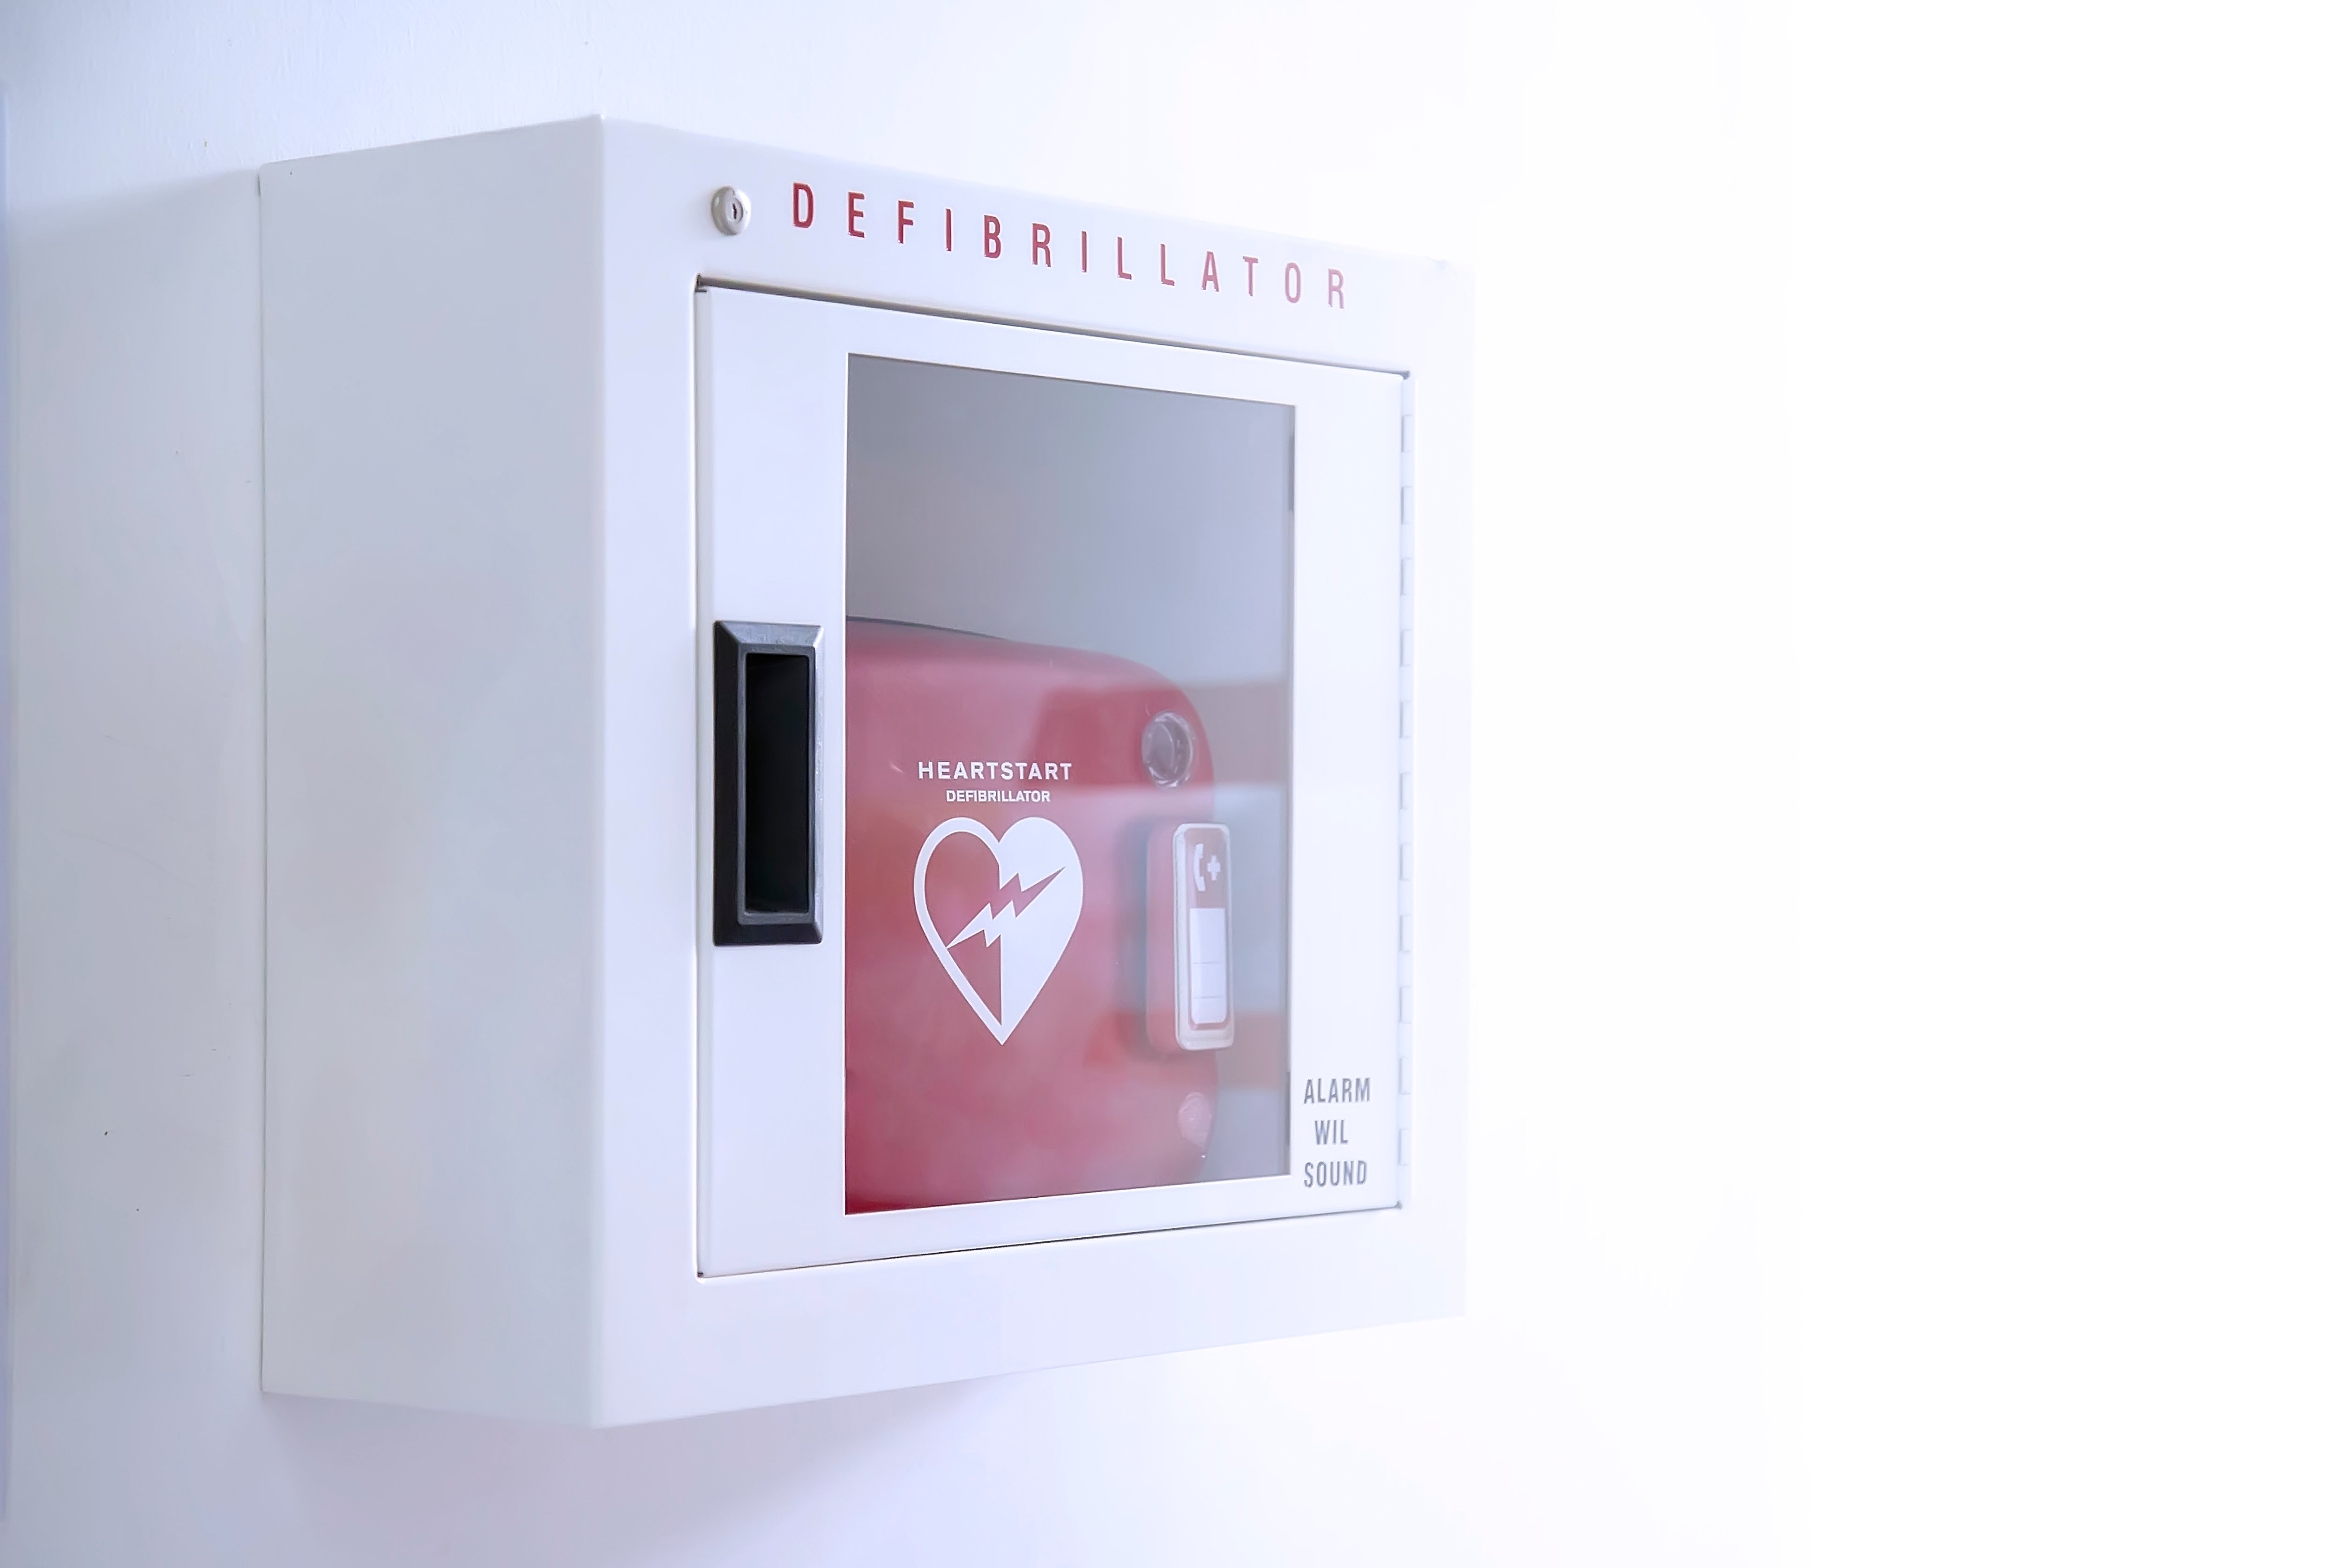 Automated External Defibrillator (AED) in weißer Schachtel an der Wand Ist ein Notfall-Schrittmacher Gerät für Menschen mit Herzstillstand. Herzdefibrillator auf weißem Hintergrund. | Foto von: Witsawat.S via Shutterstock 